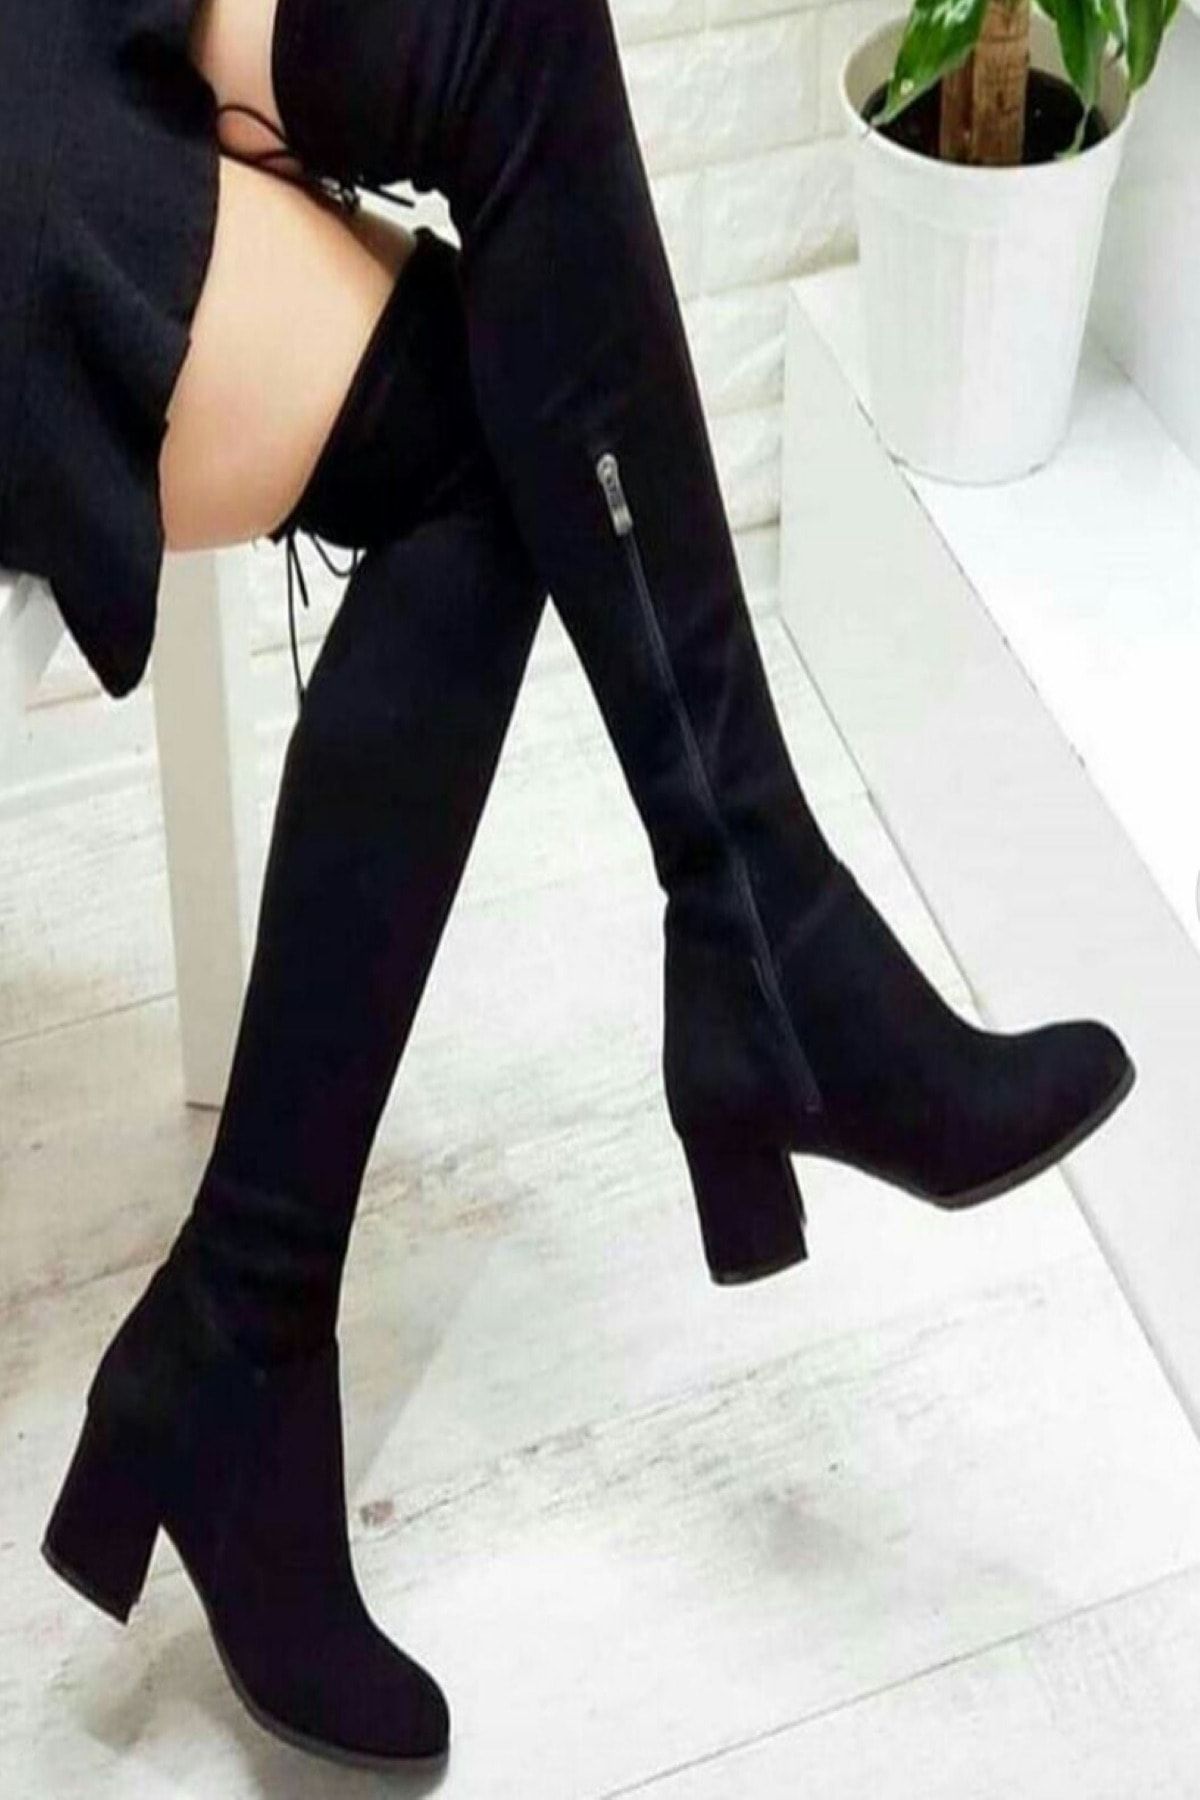 TrendyAnka Kadın Siyah Çorap Çizme 5.5 Cm Topuklu Diz Üstü Süet Fermuarlı Streç Çizme